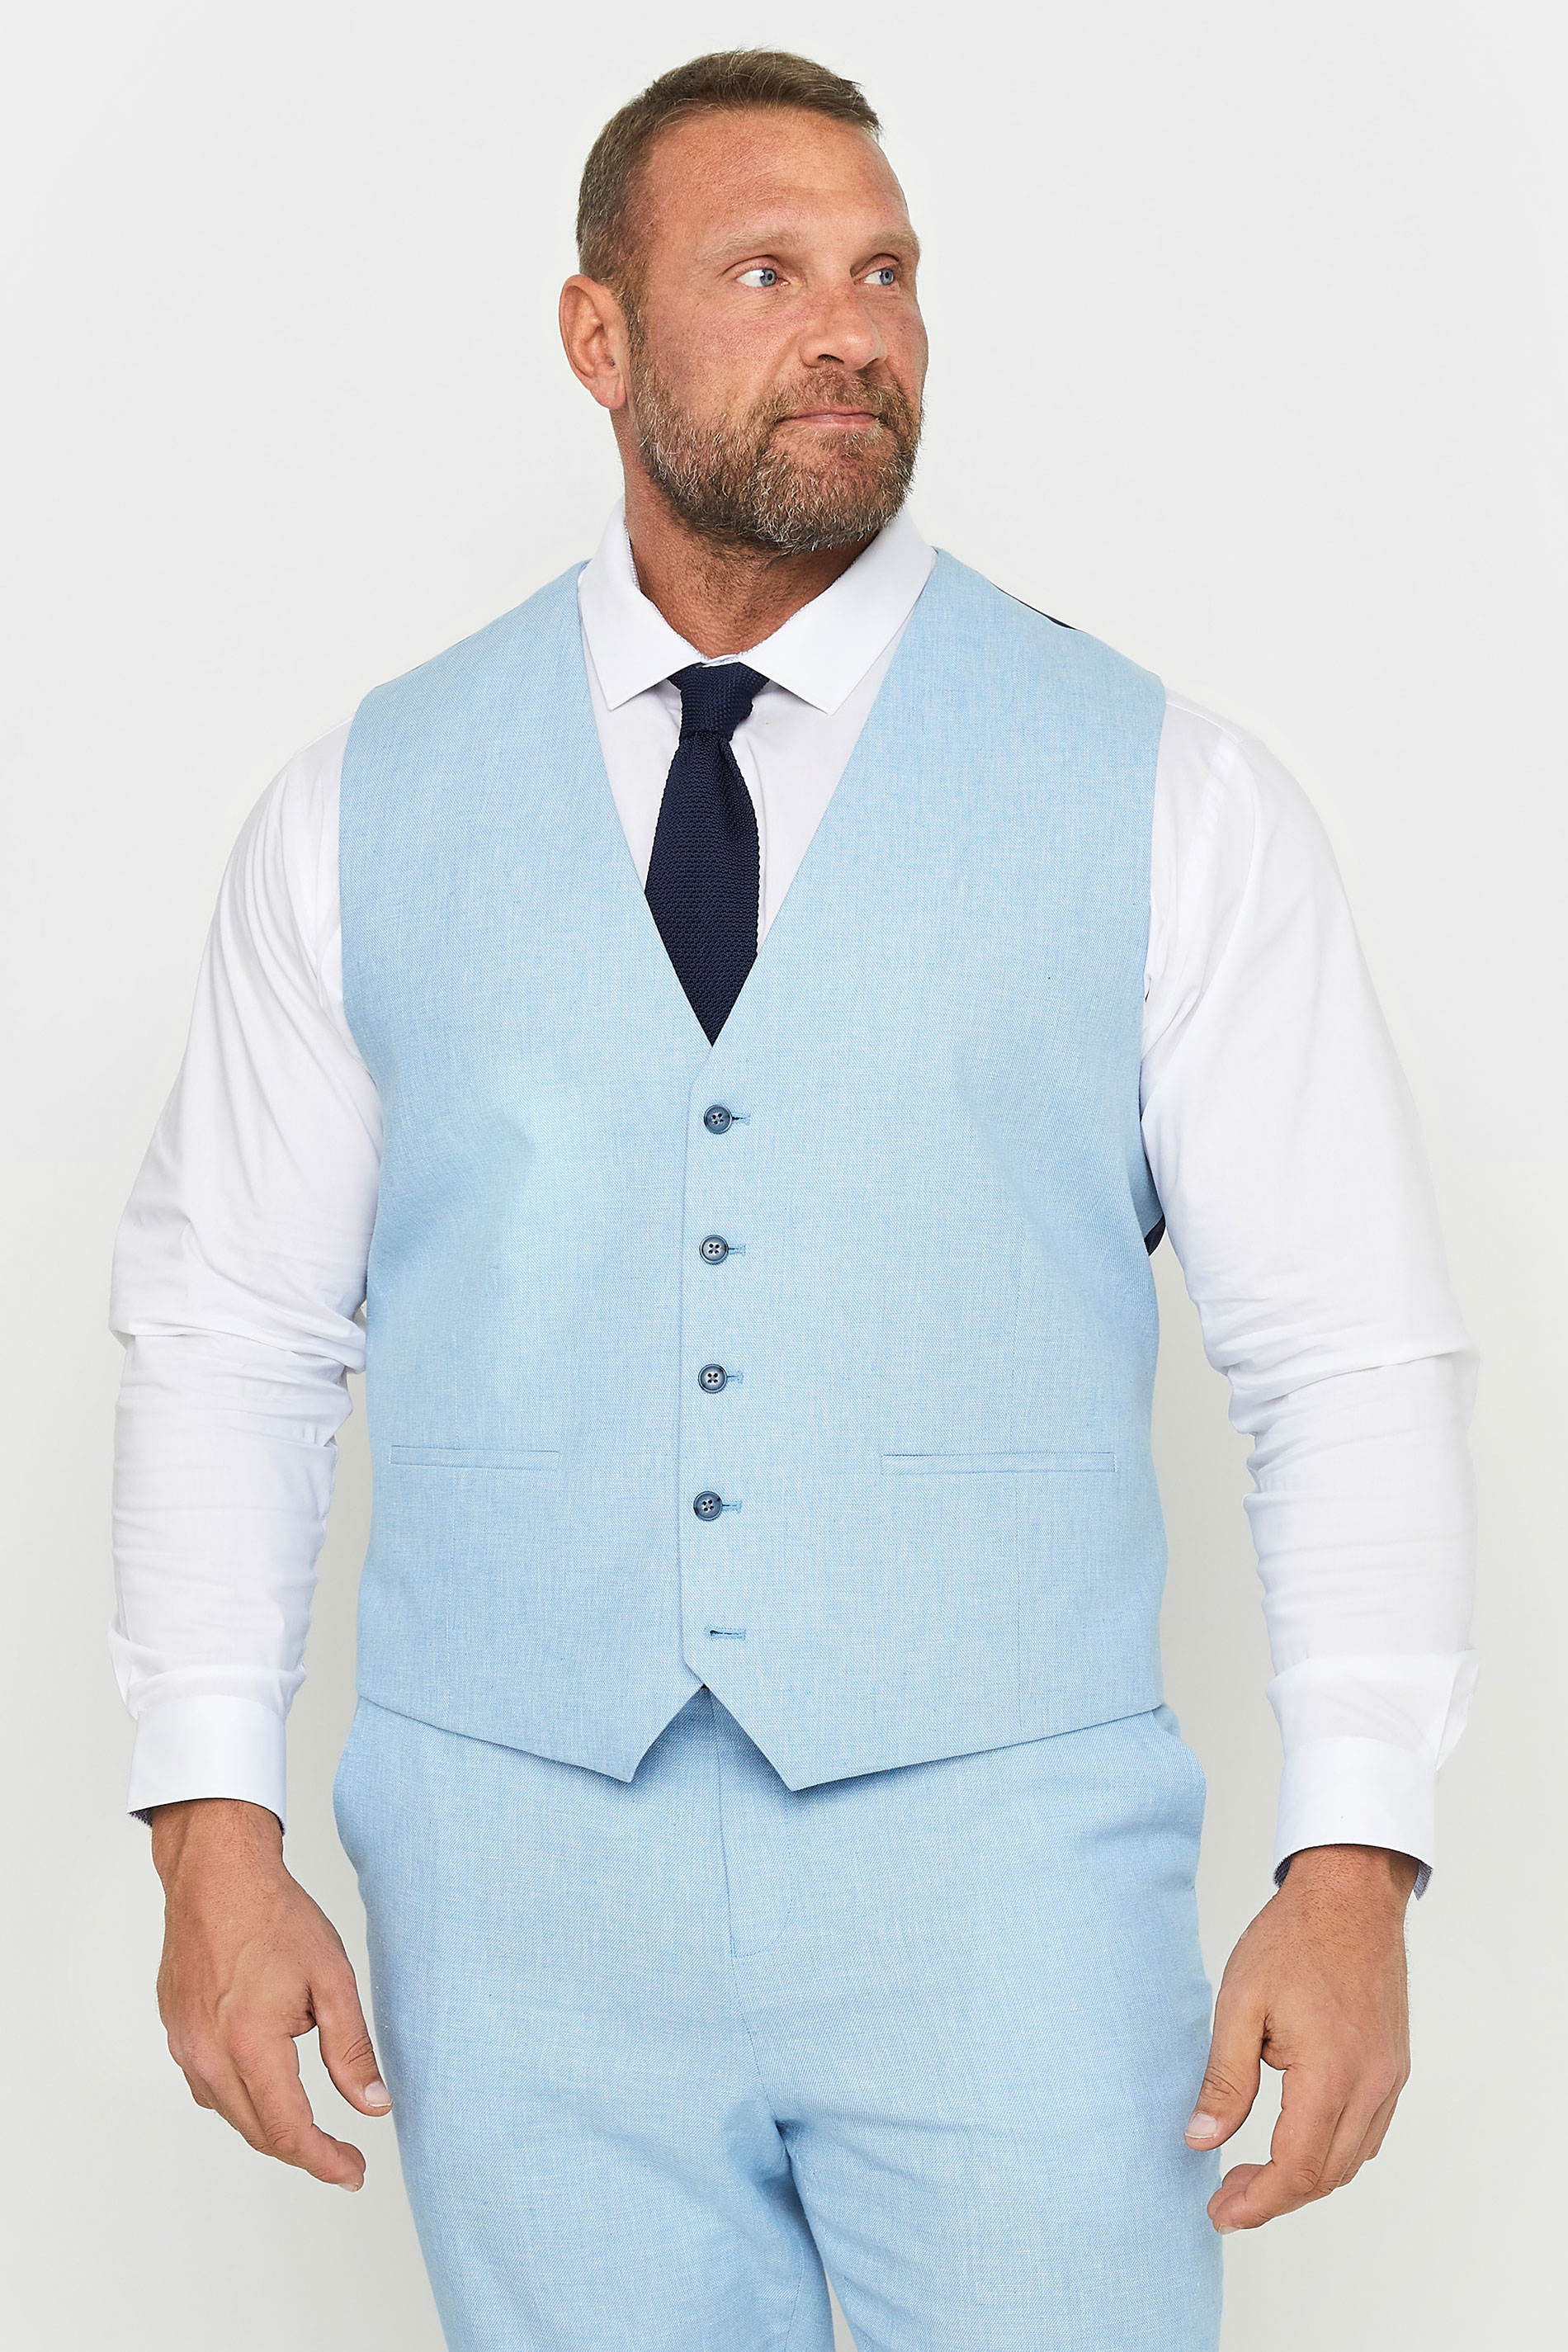 BadRhino Light Blue Linen Suit Waistcoat | BadRhino 2